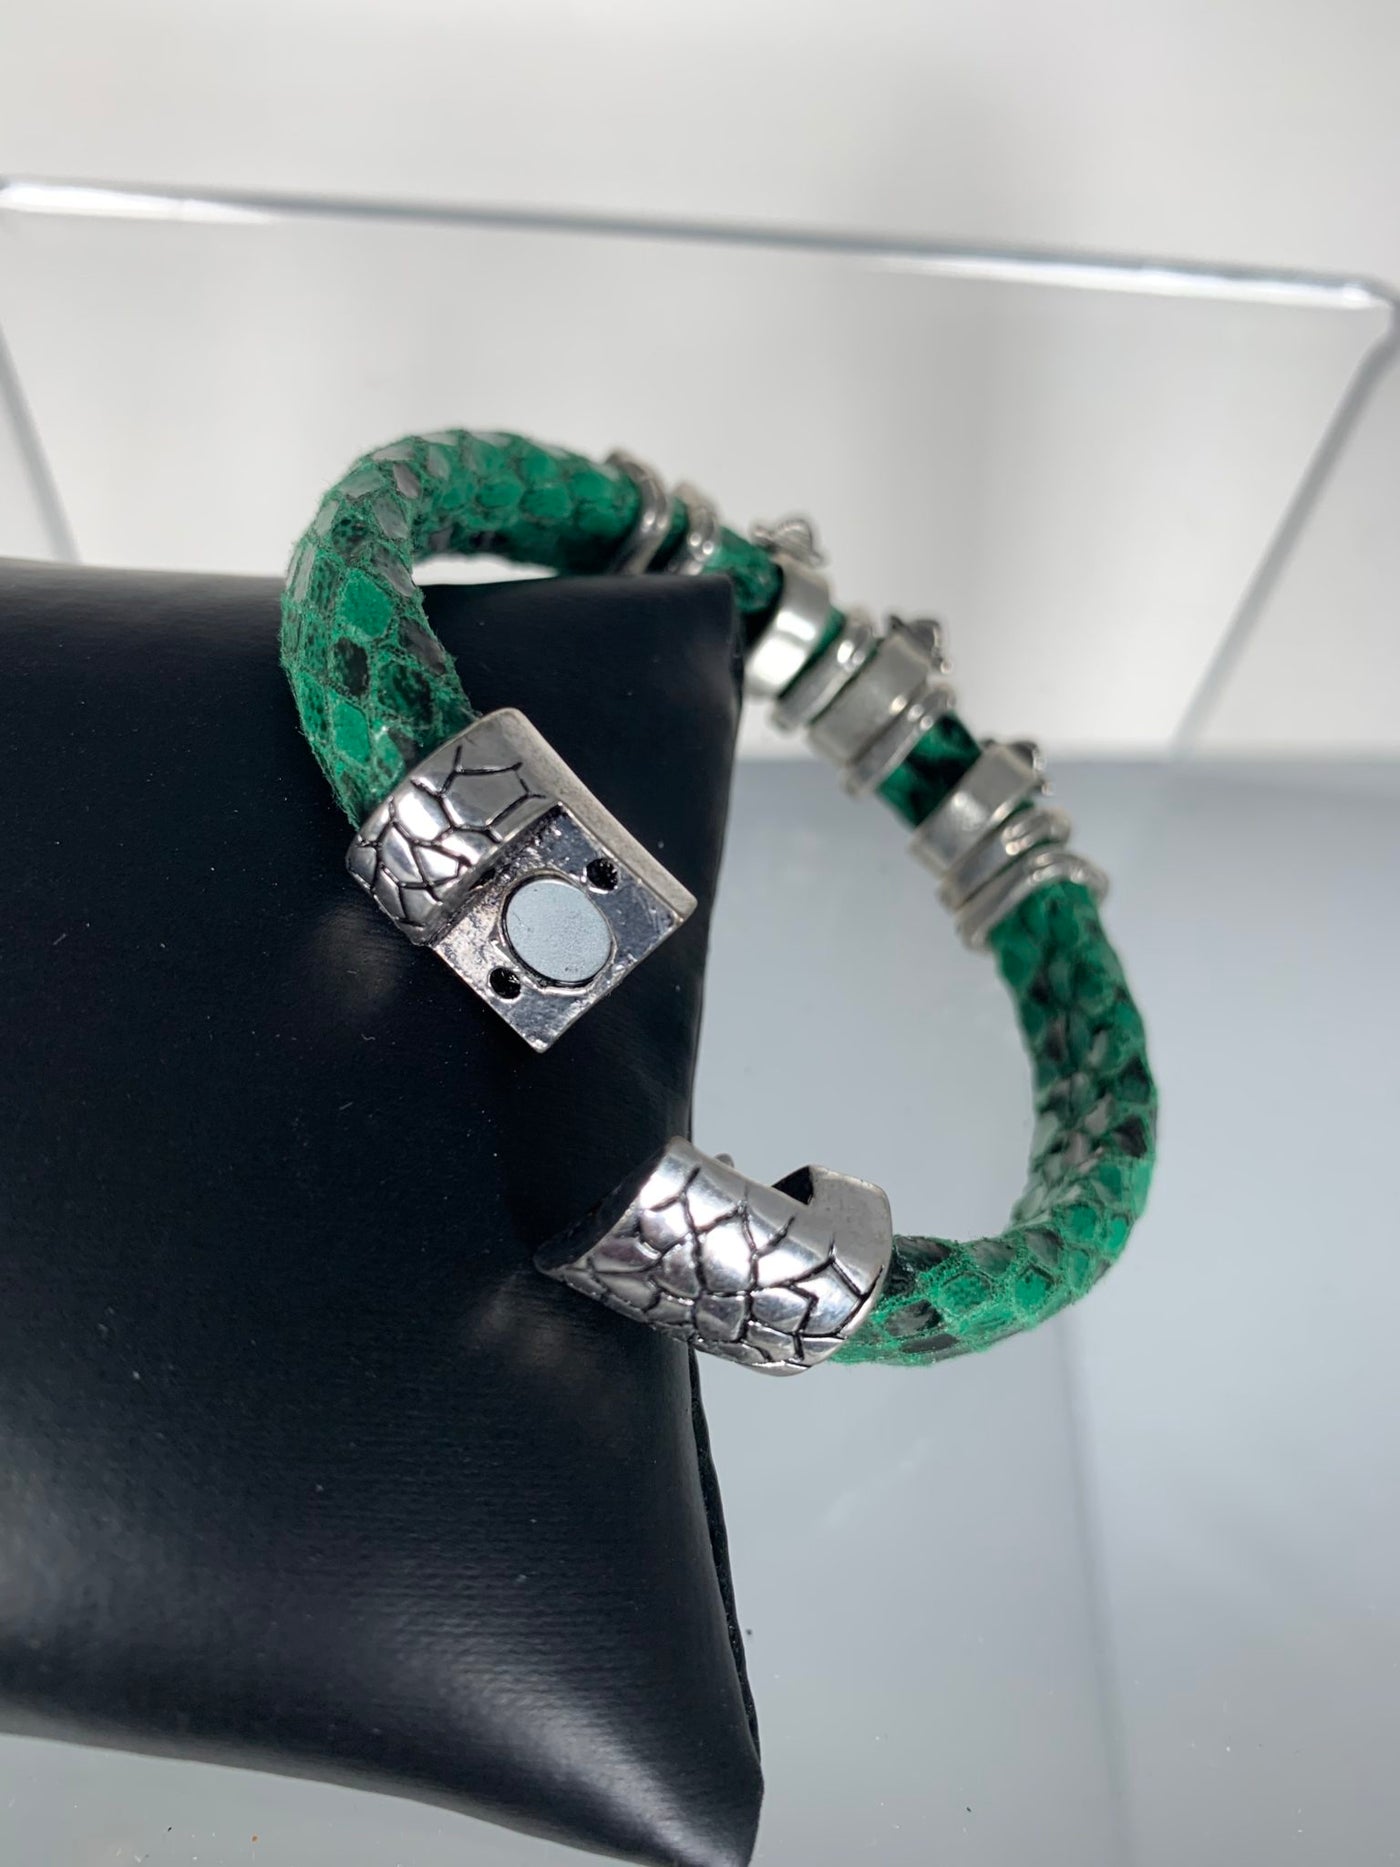 Green Snake Skin Band Bracelet Featuring Fleur De Lis Motifs